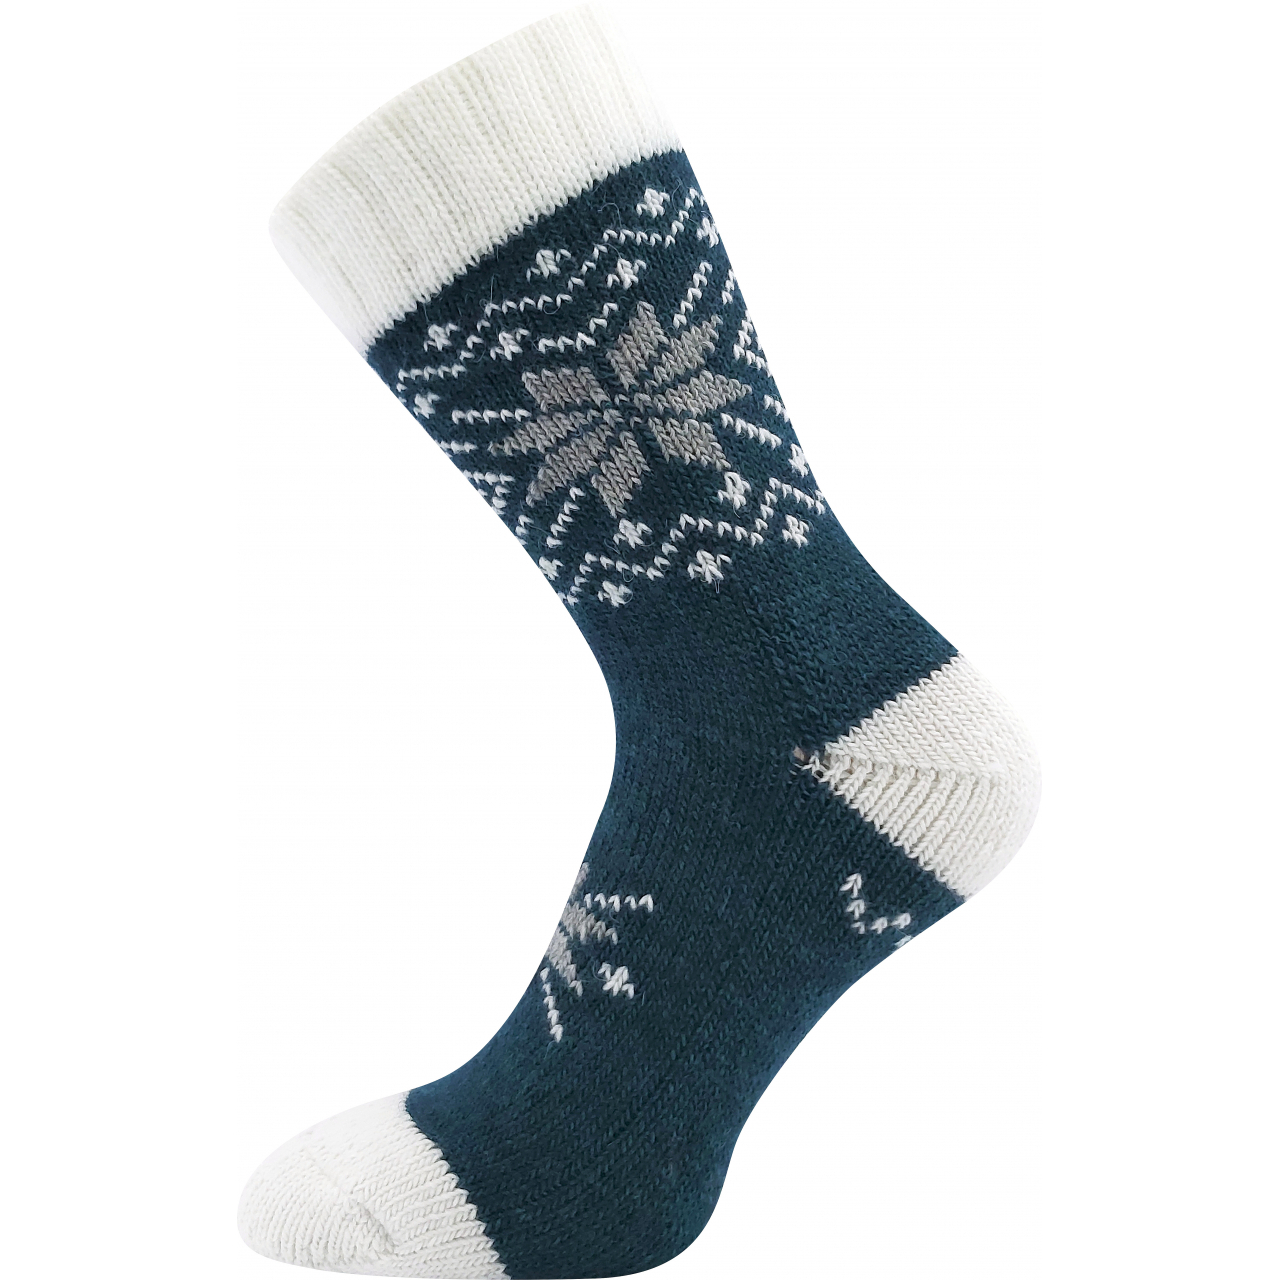 Ponožky vlněné unisex Voxx Alta - navy-bílé, 43-46